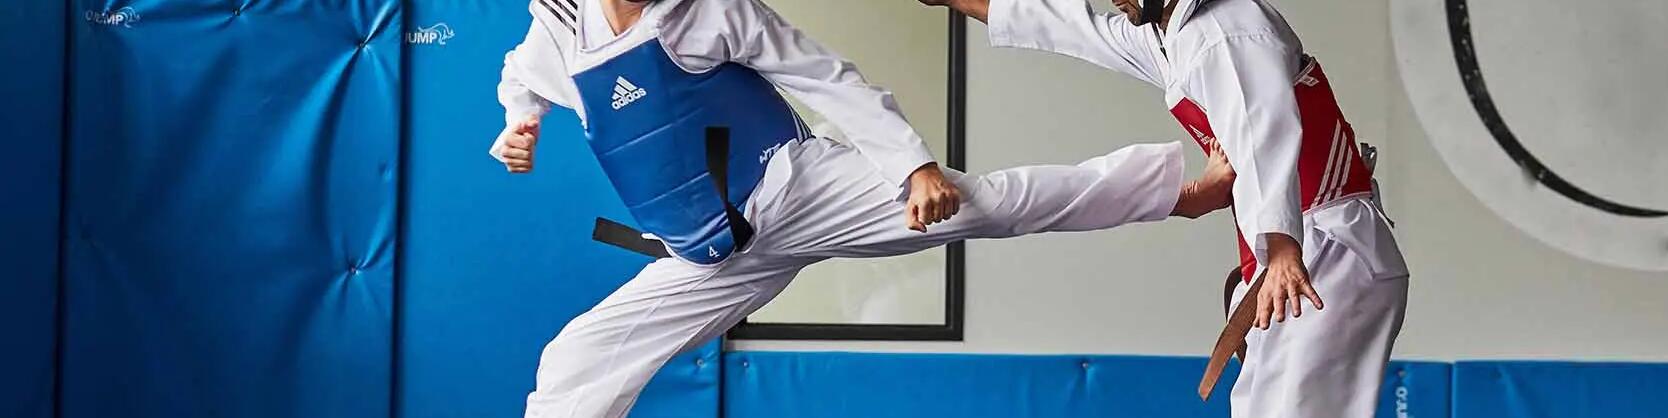 Taekwondo – die grundlegenden Wettkampfregeln